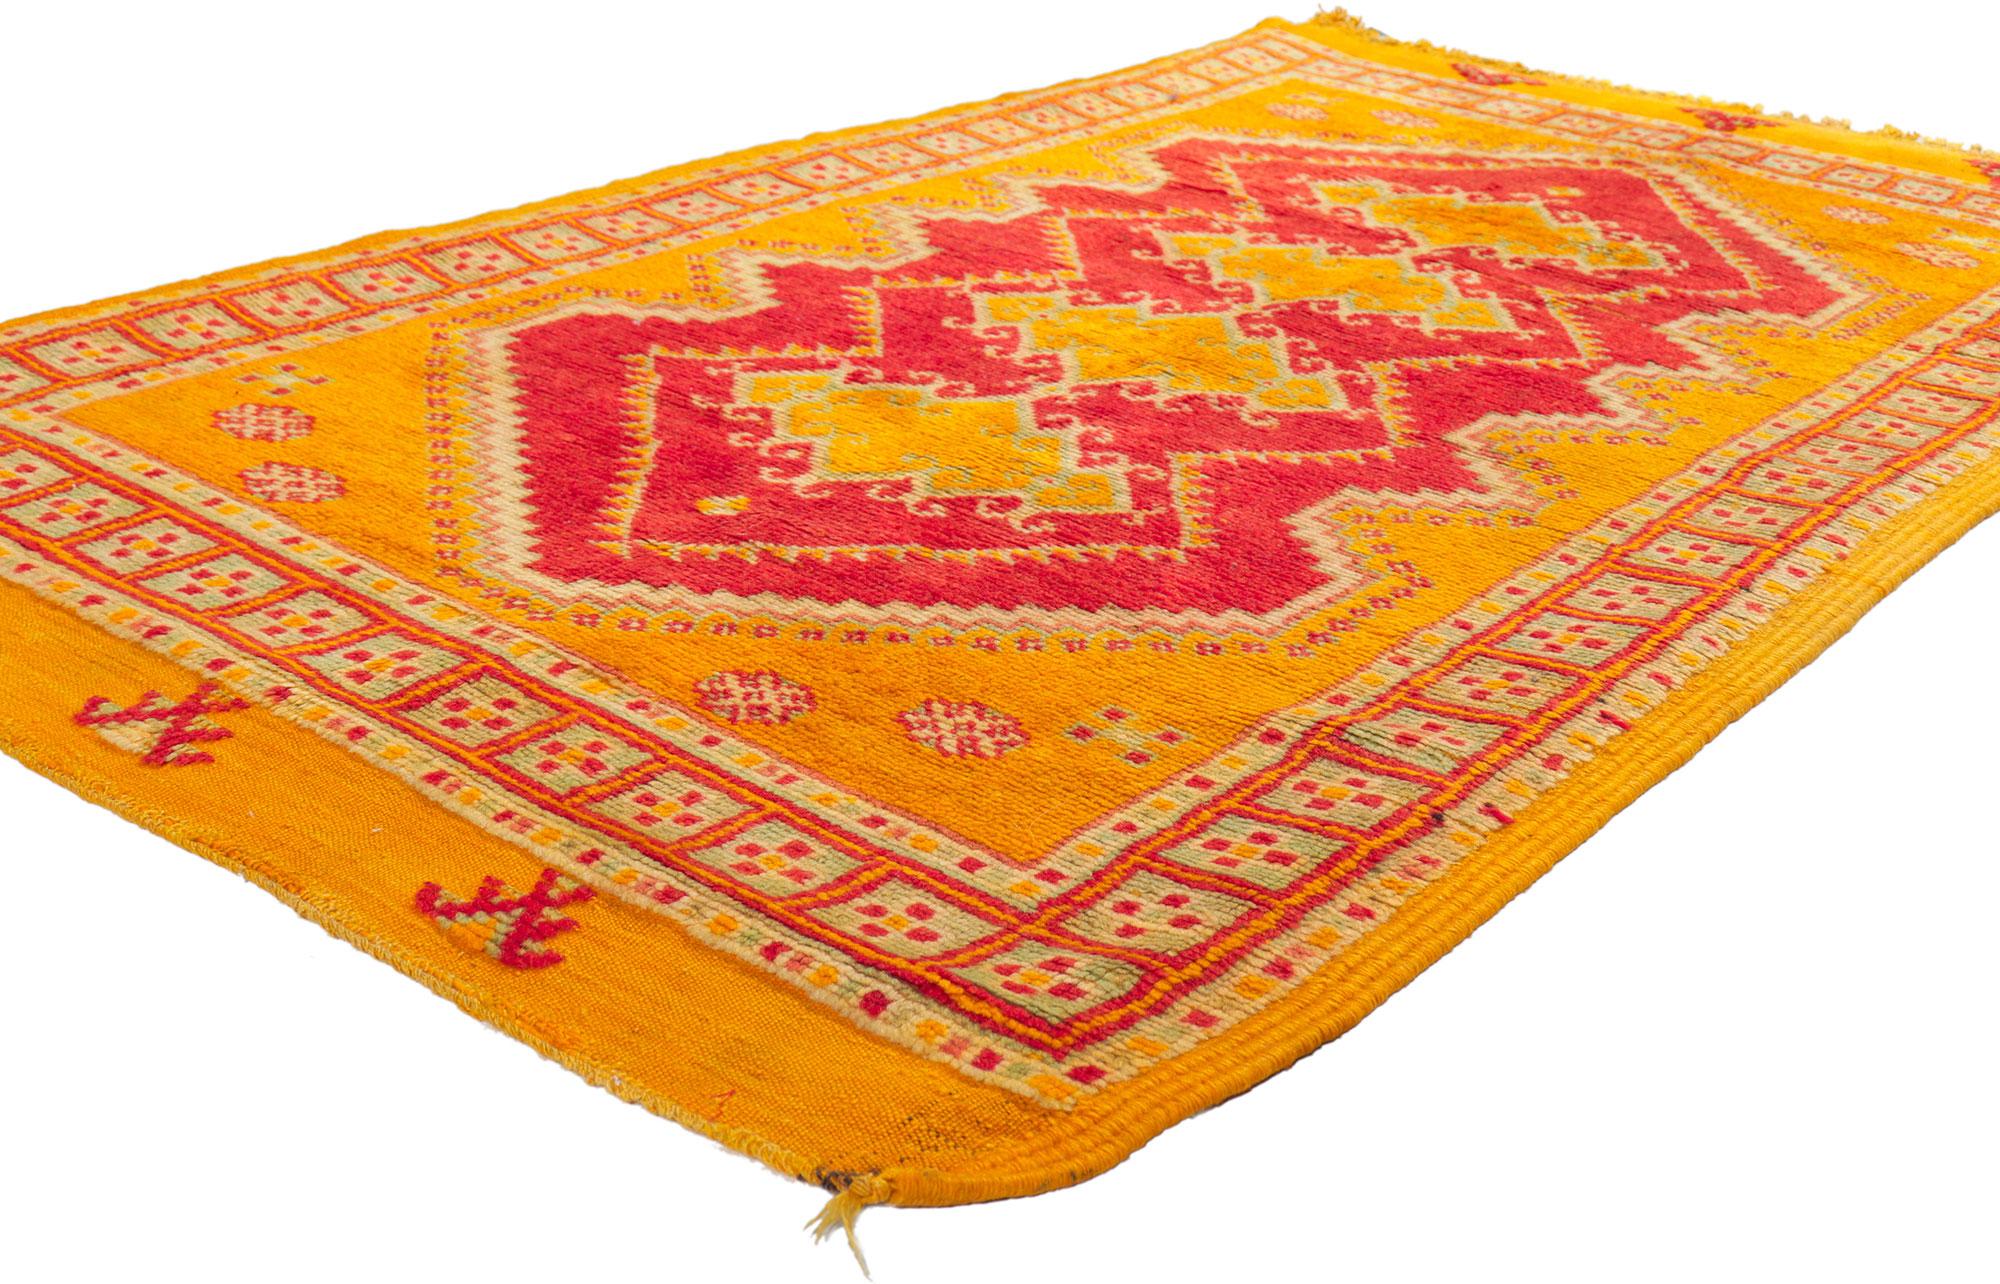 74570 Tapis marocain berbère vintage, 03'08 x 06'0. 
Les tons vifs de jaune, d'orange et de rouge tissés dans cette pièce s'associent pour créer un look vraiment unique. Le motif panaché évoque l'esprit tribal du Maroc dans ce tapis berbère marocain